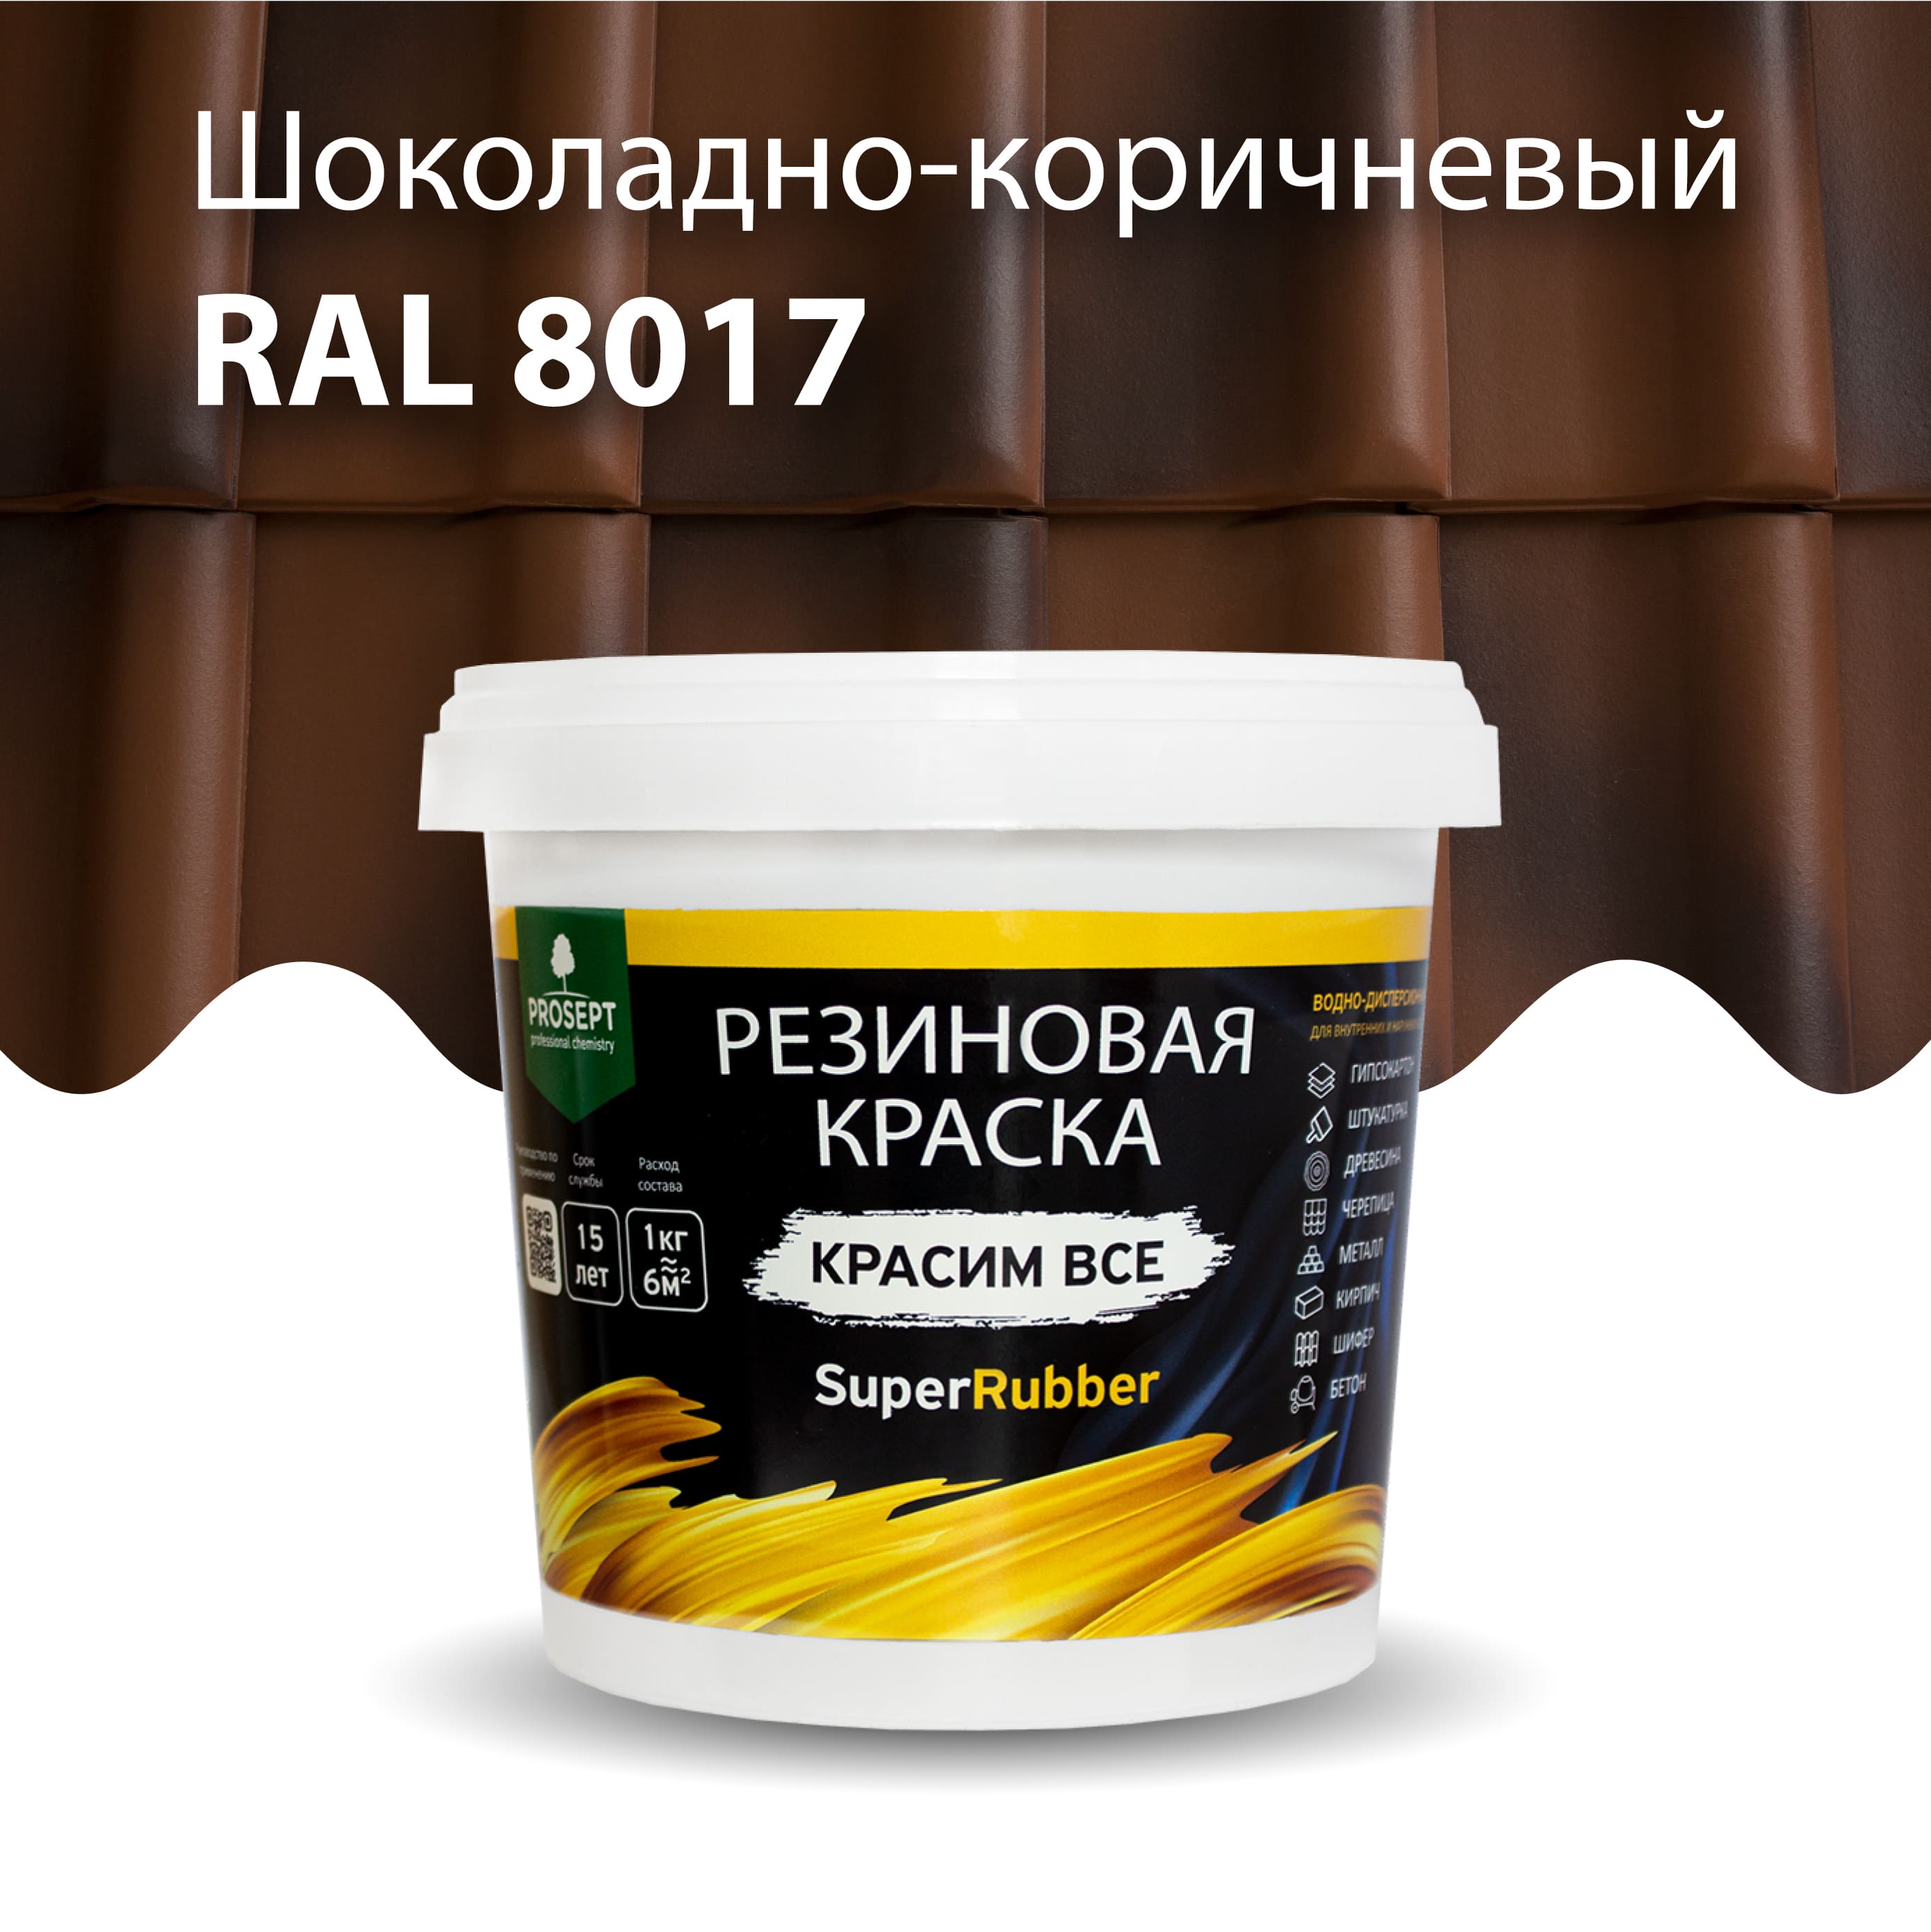 Краска Резиновая краска SuperRubber, RAL 8017 (шоколадно-коричневый), 1 кг